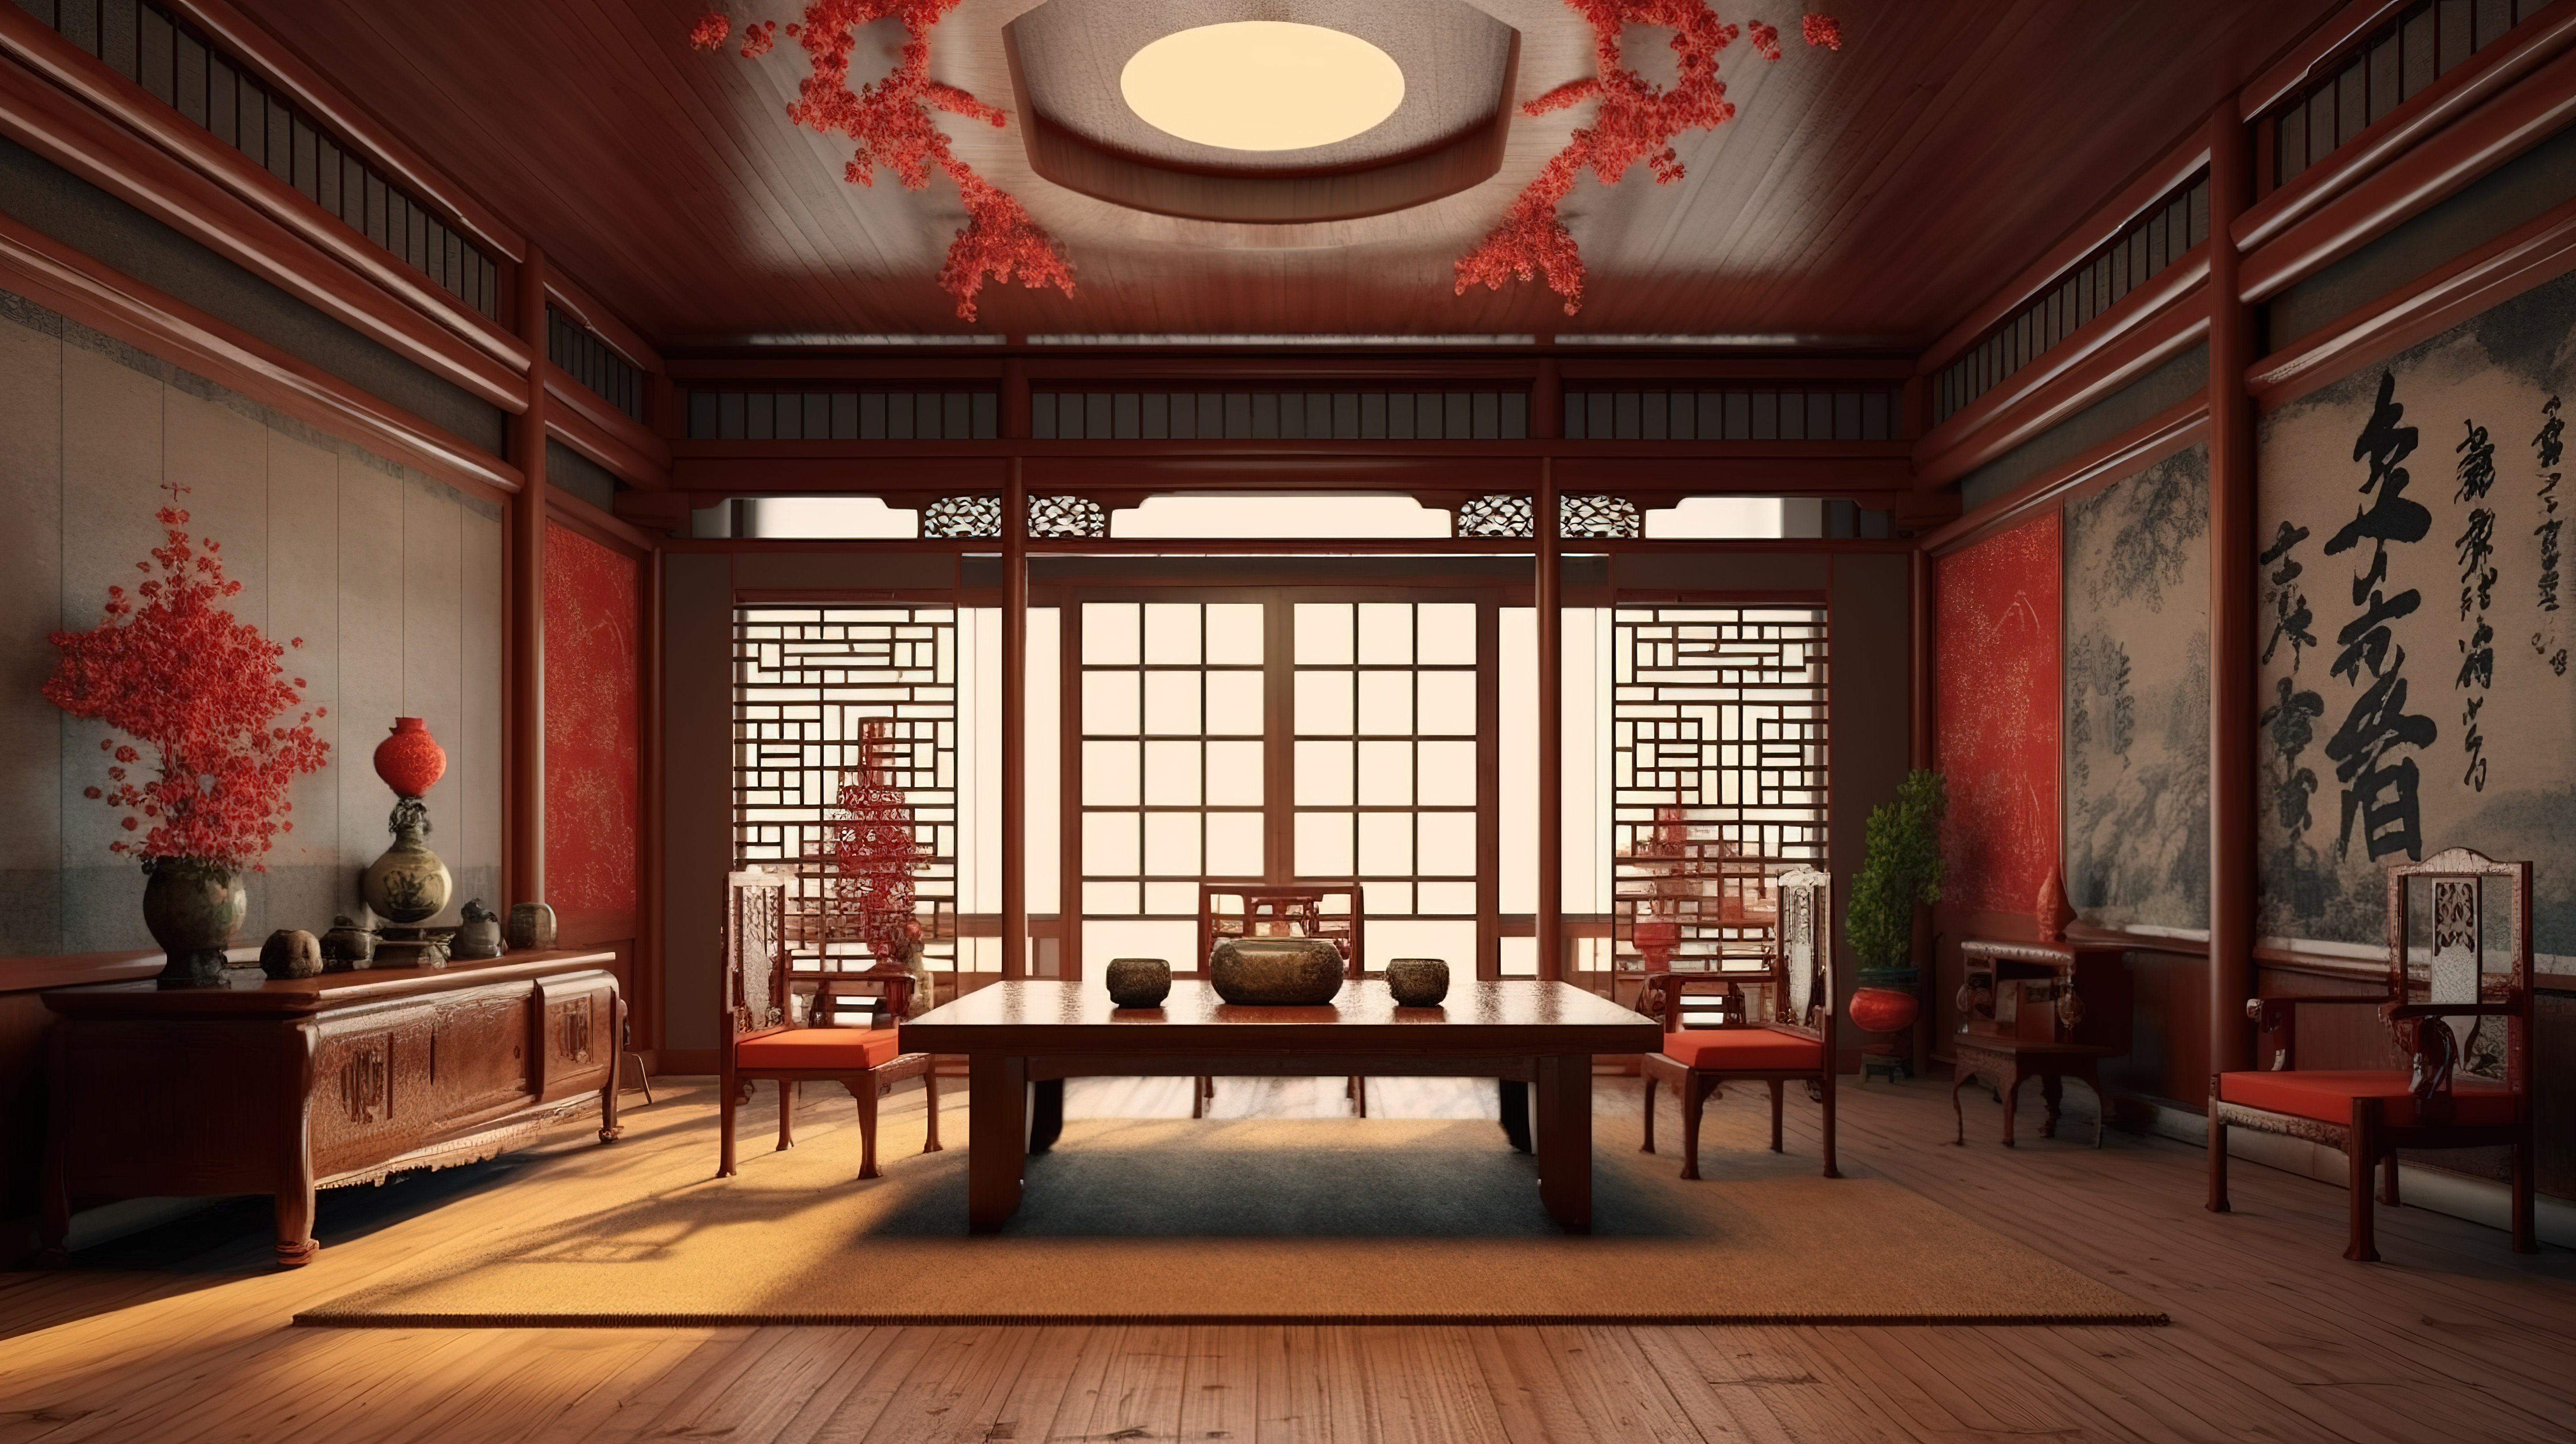 中国风格室内设计的 3D 渲染图片